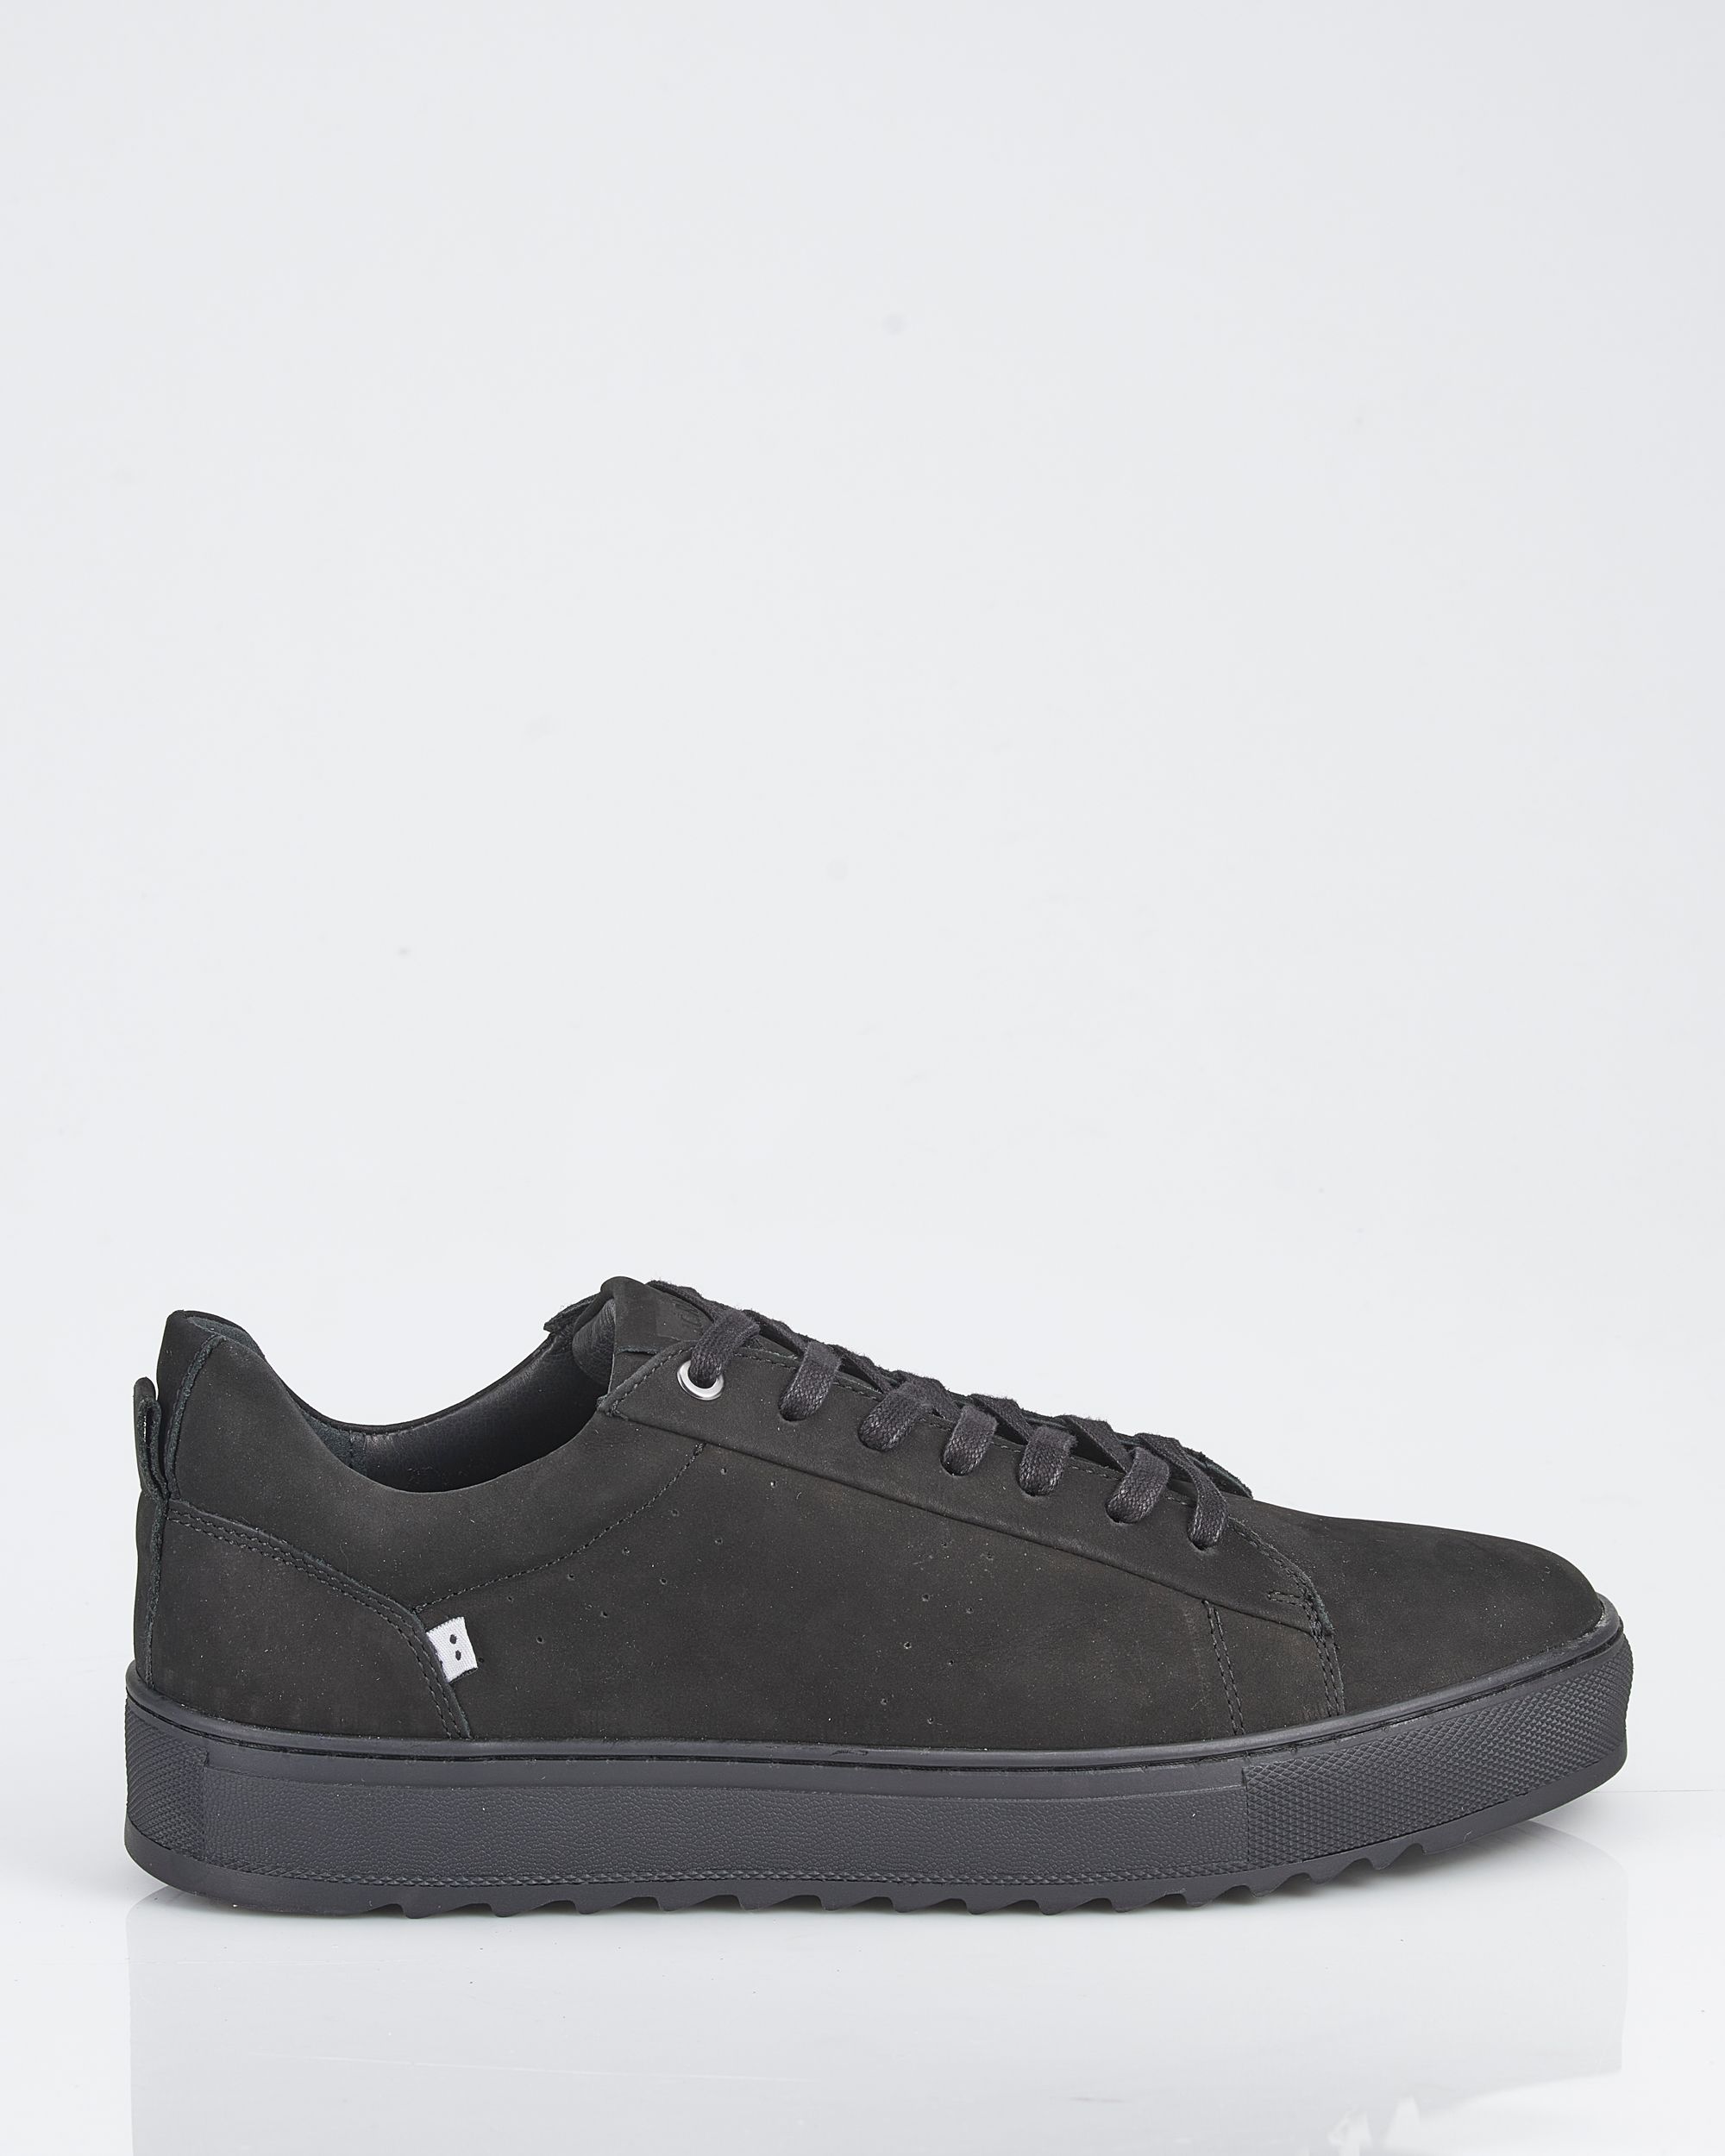 J.C. Rags Casual Sneakers Black 088304-001-41